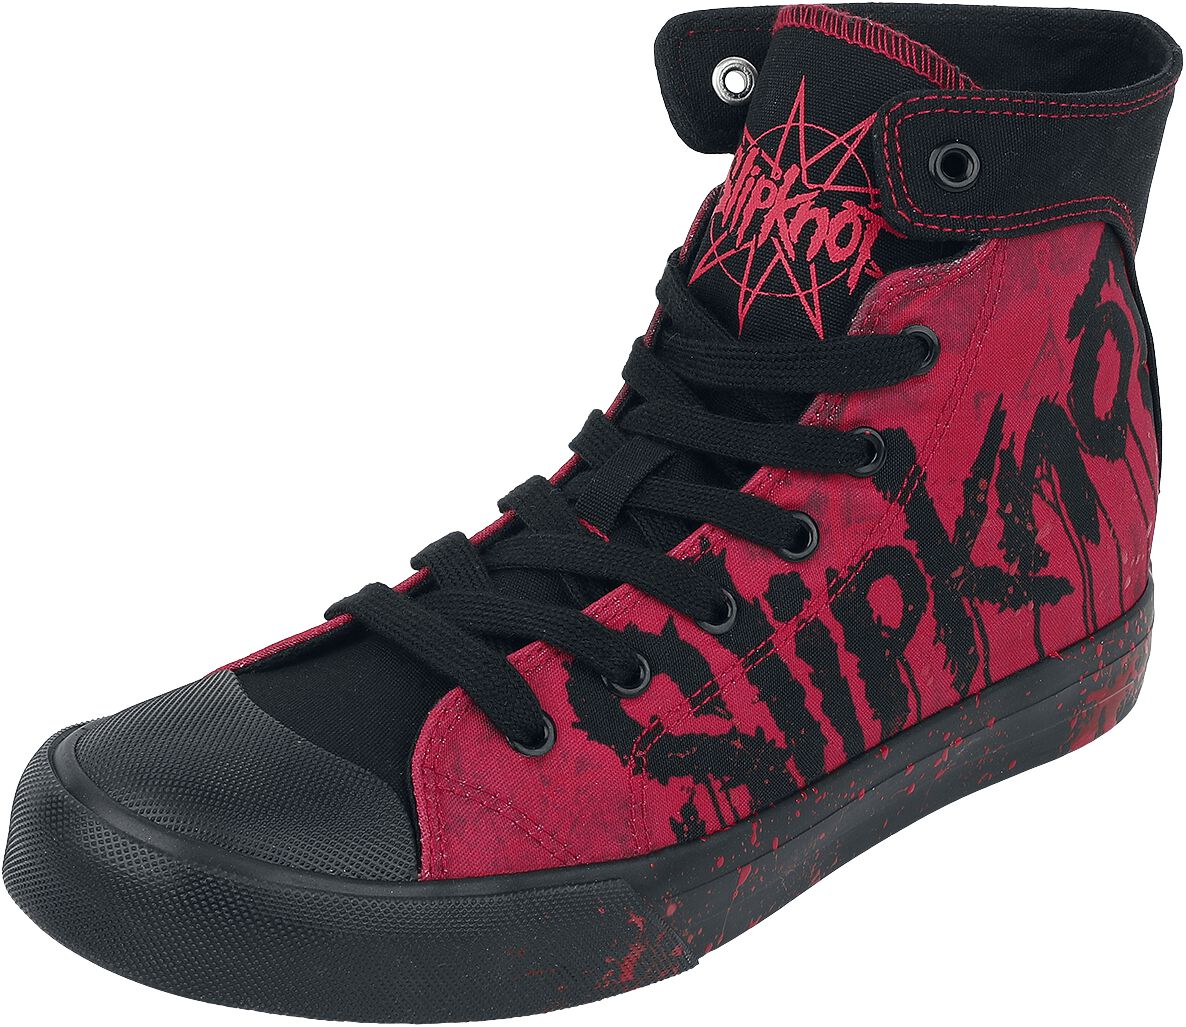 Slipknot Sneaker high - EMP Signature Collection - EU37 bis EU42 - Größe EU42 - schwarz/rot  - EMP exklusives Merchandise!